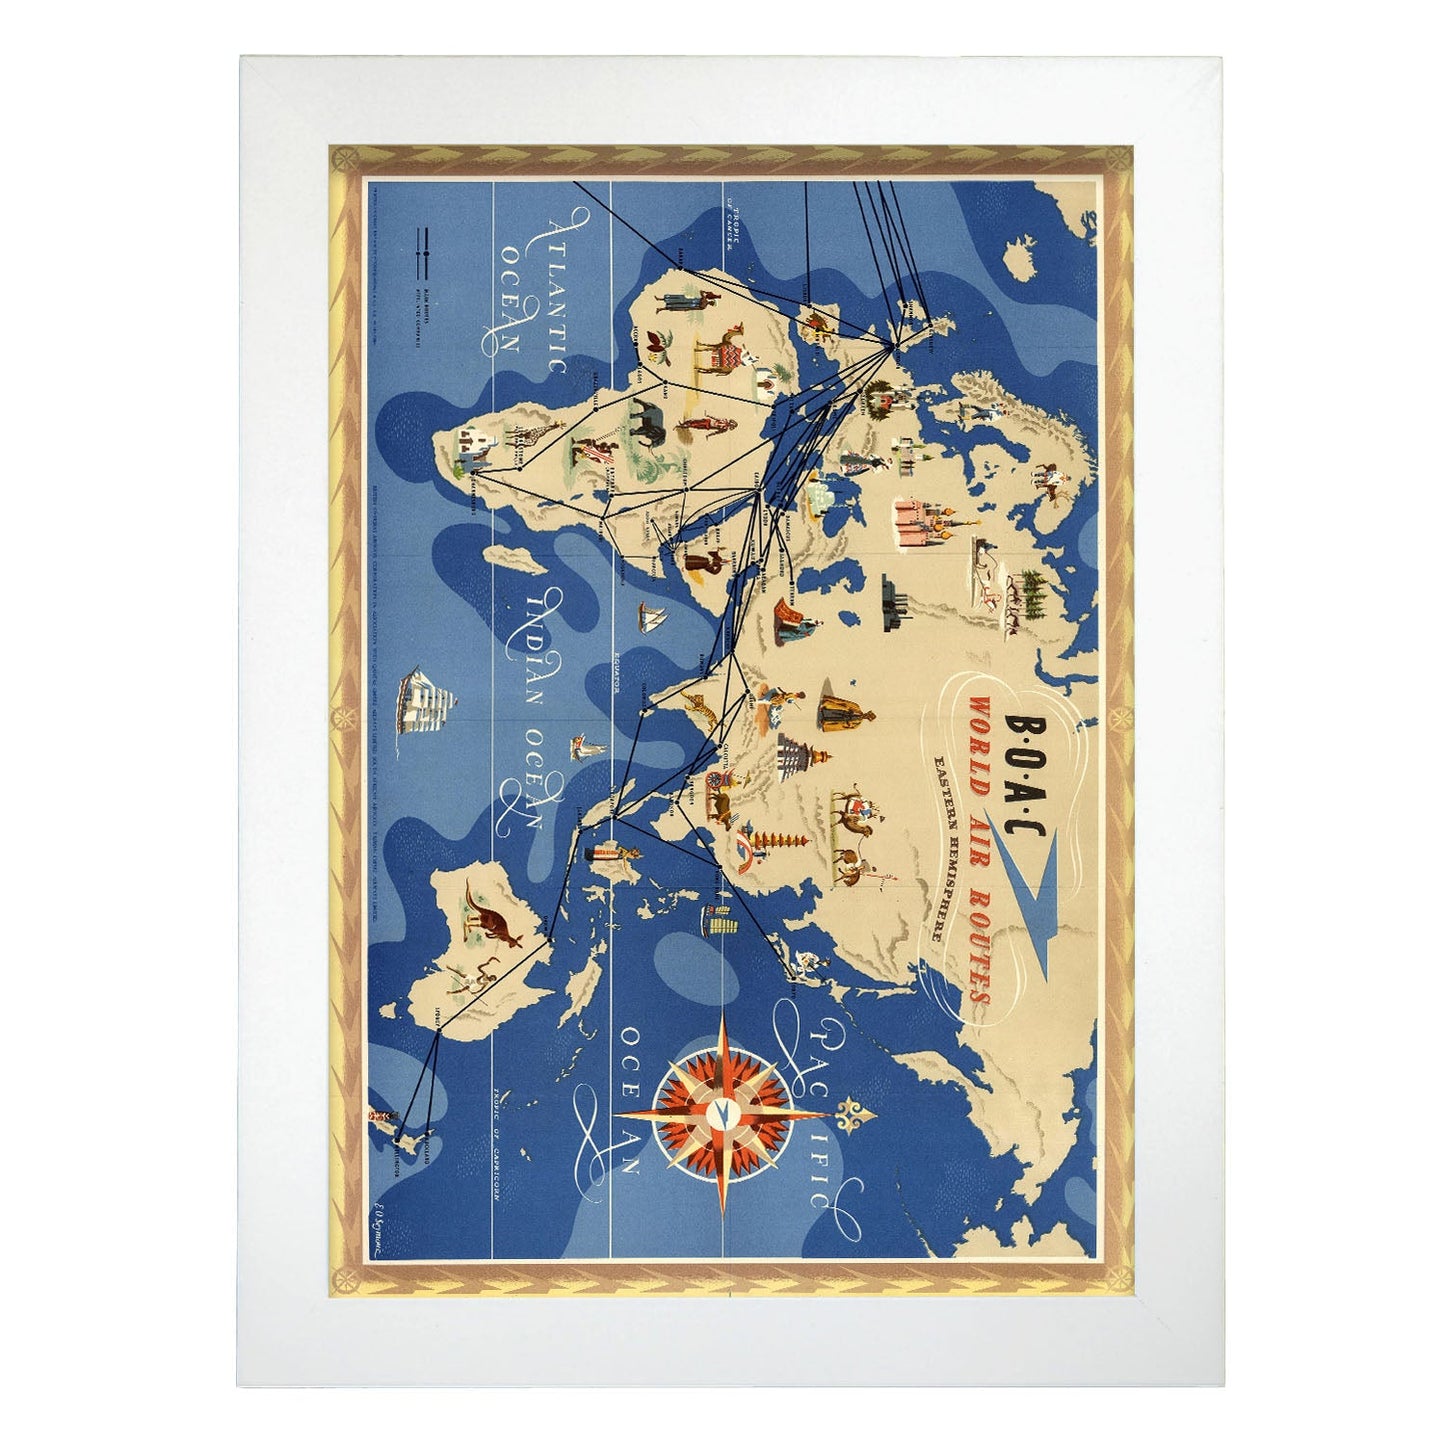 BOAC-World-route-map-Eastern-Hemisphere-Artwork-Nacnic-A4-Marco Blanco-Nacnic Estudio SL